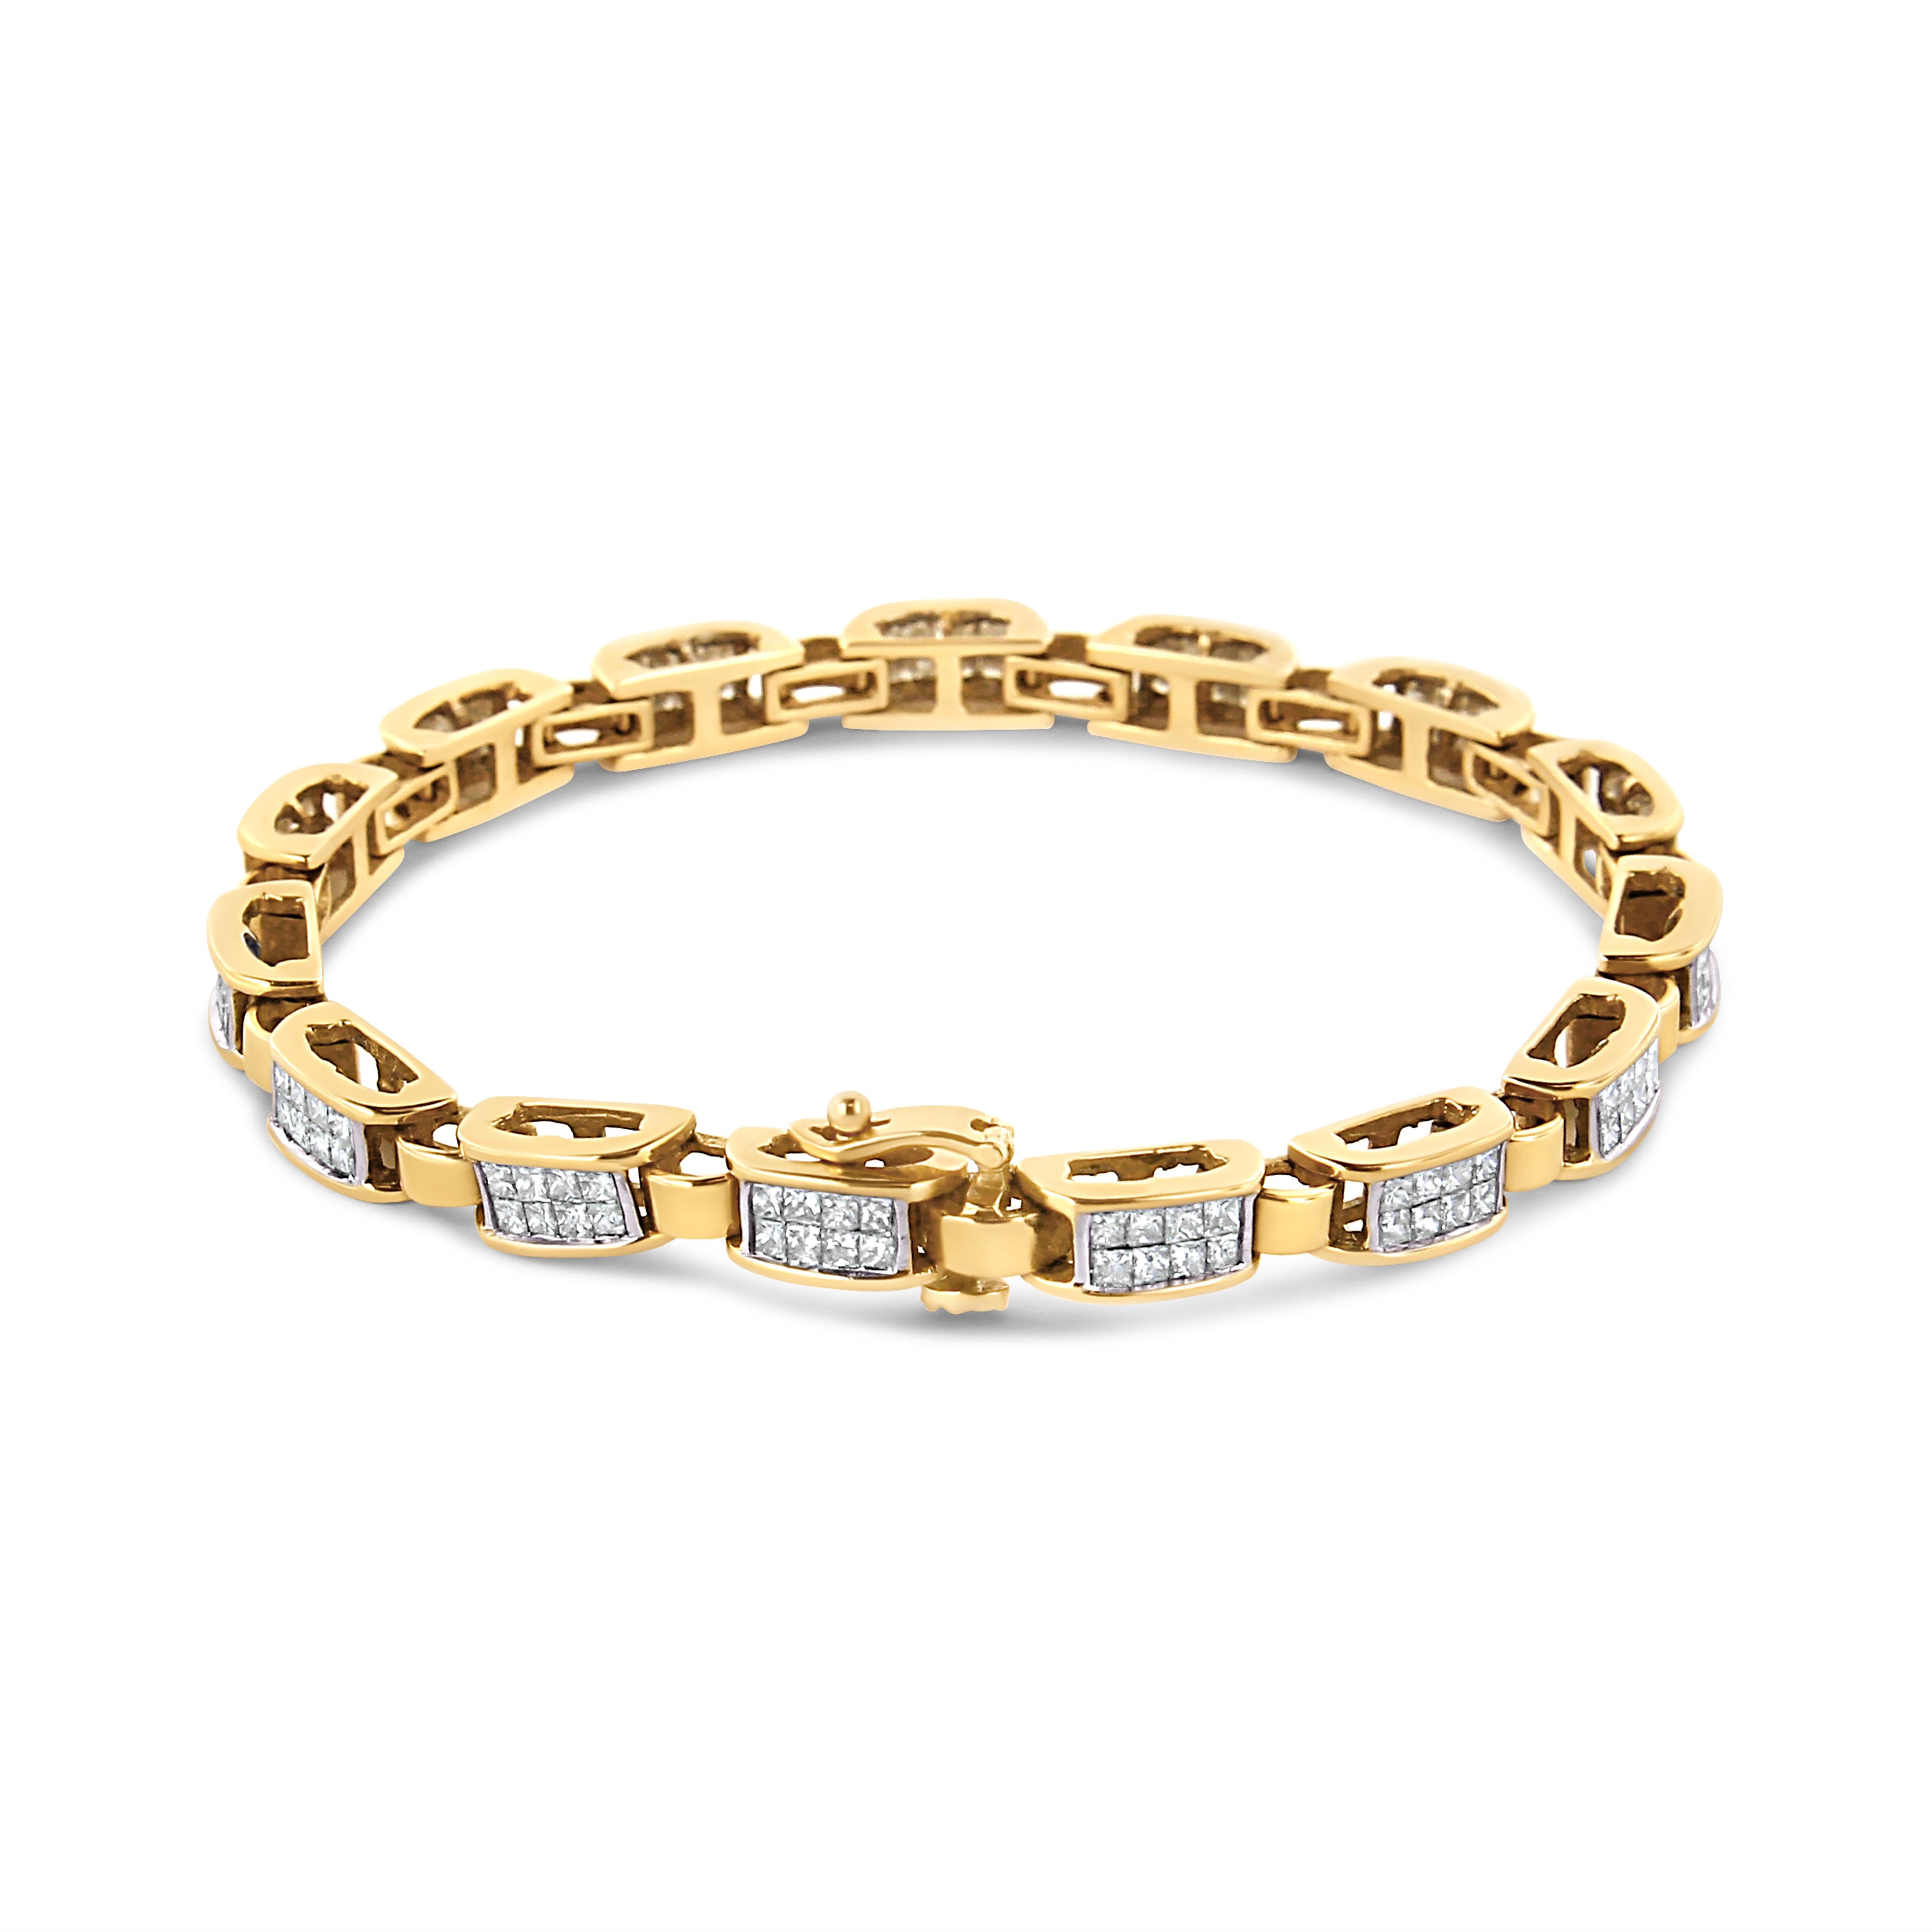 Ce bracelet à maillons aux motifs géométriques est une pièce intemporelle. De petites bandes en or jaune sont reliées à de plus grandes bandes incrustées de huit diamants taille princesse. 2 1/2ct TDW de diamants brillent dans ce design. Une boîte